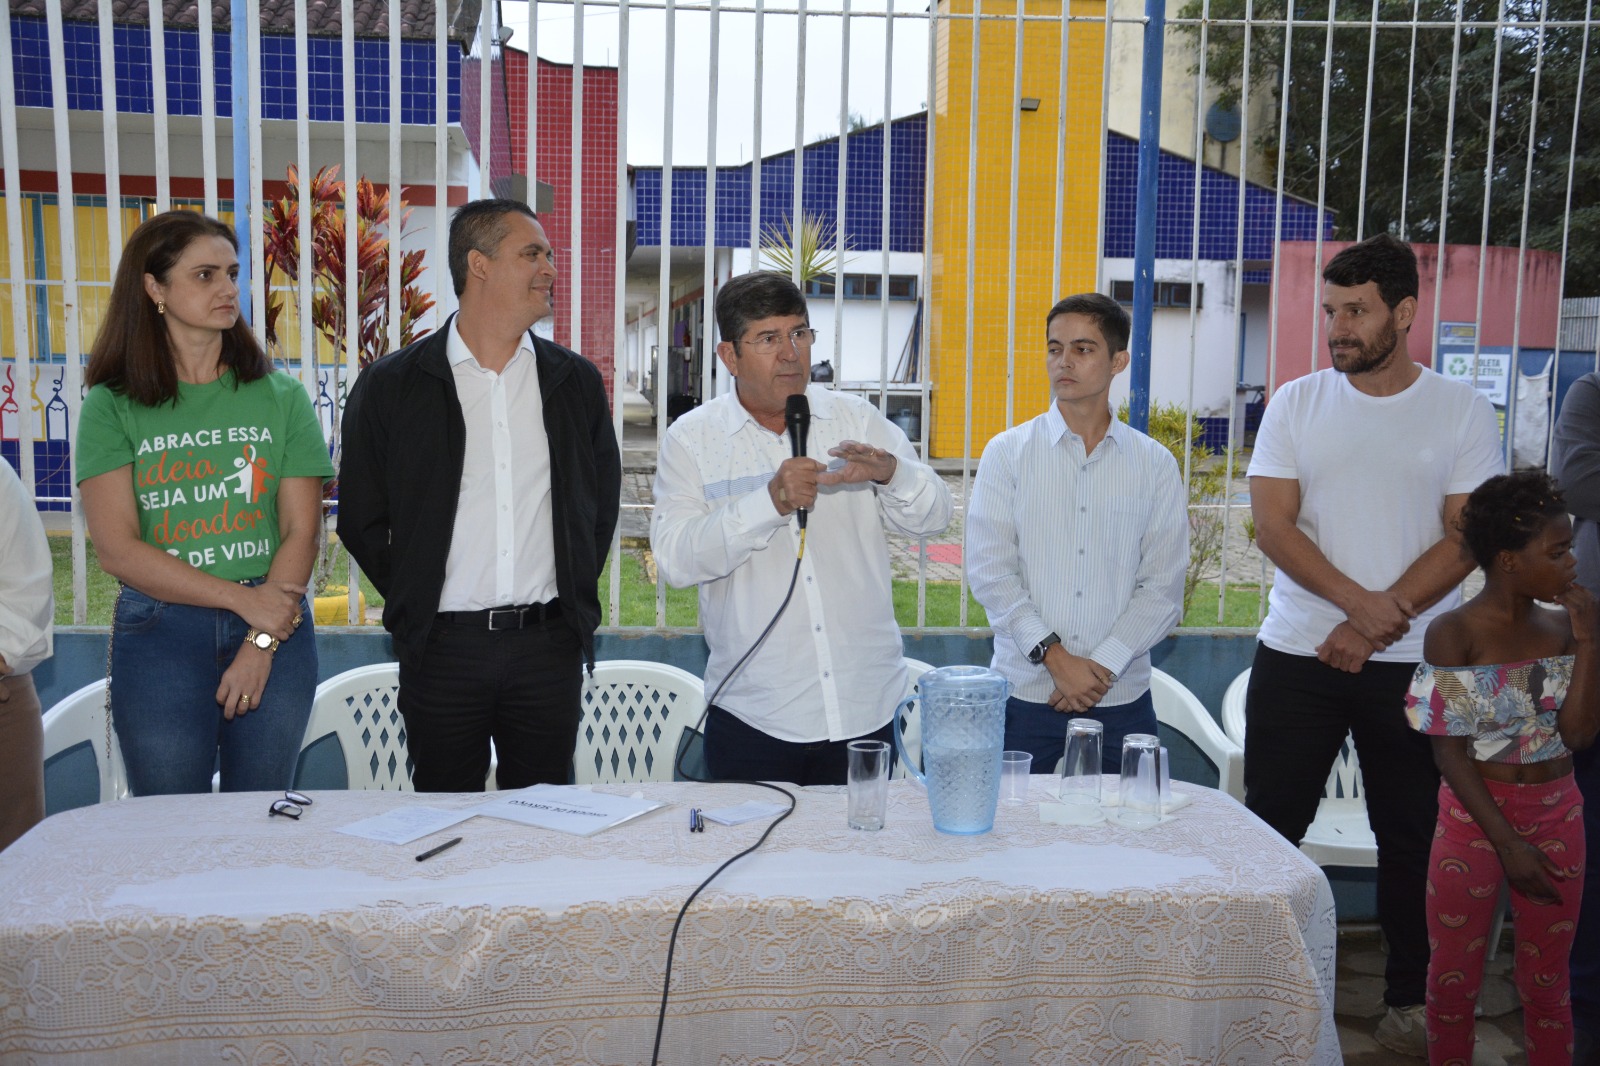 Foto: Reprodução/Prefeitura de Guaçuí - ES